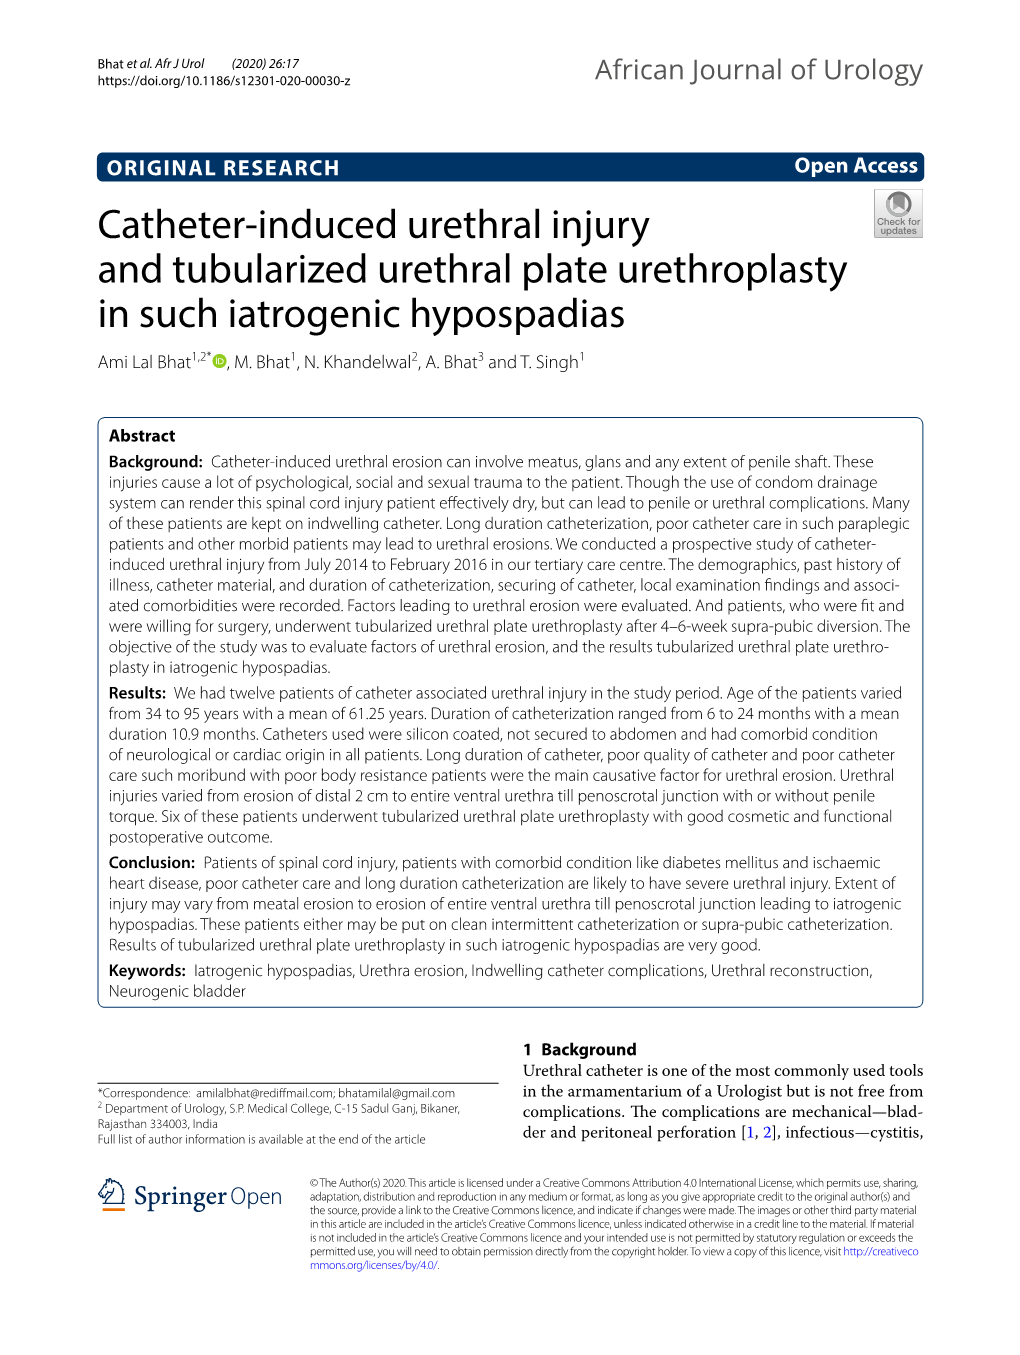 Catheter-Induced Urethral Injury and Tubularized Urethral Plate Urethroplasty in Such Iatrogenic Hypospadias